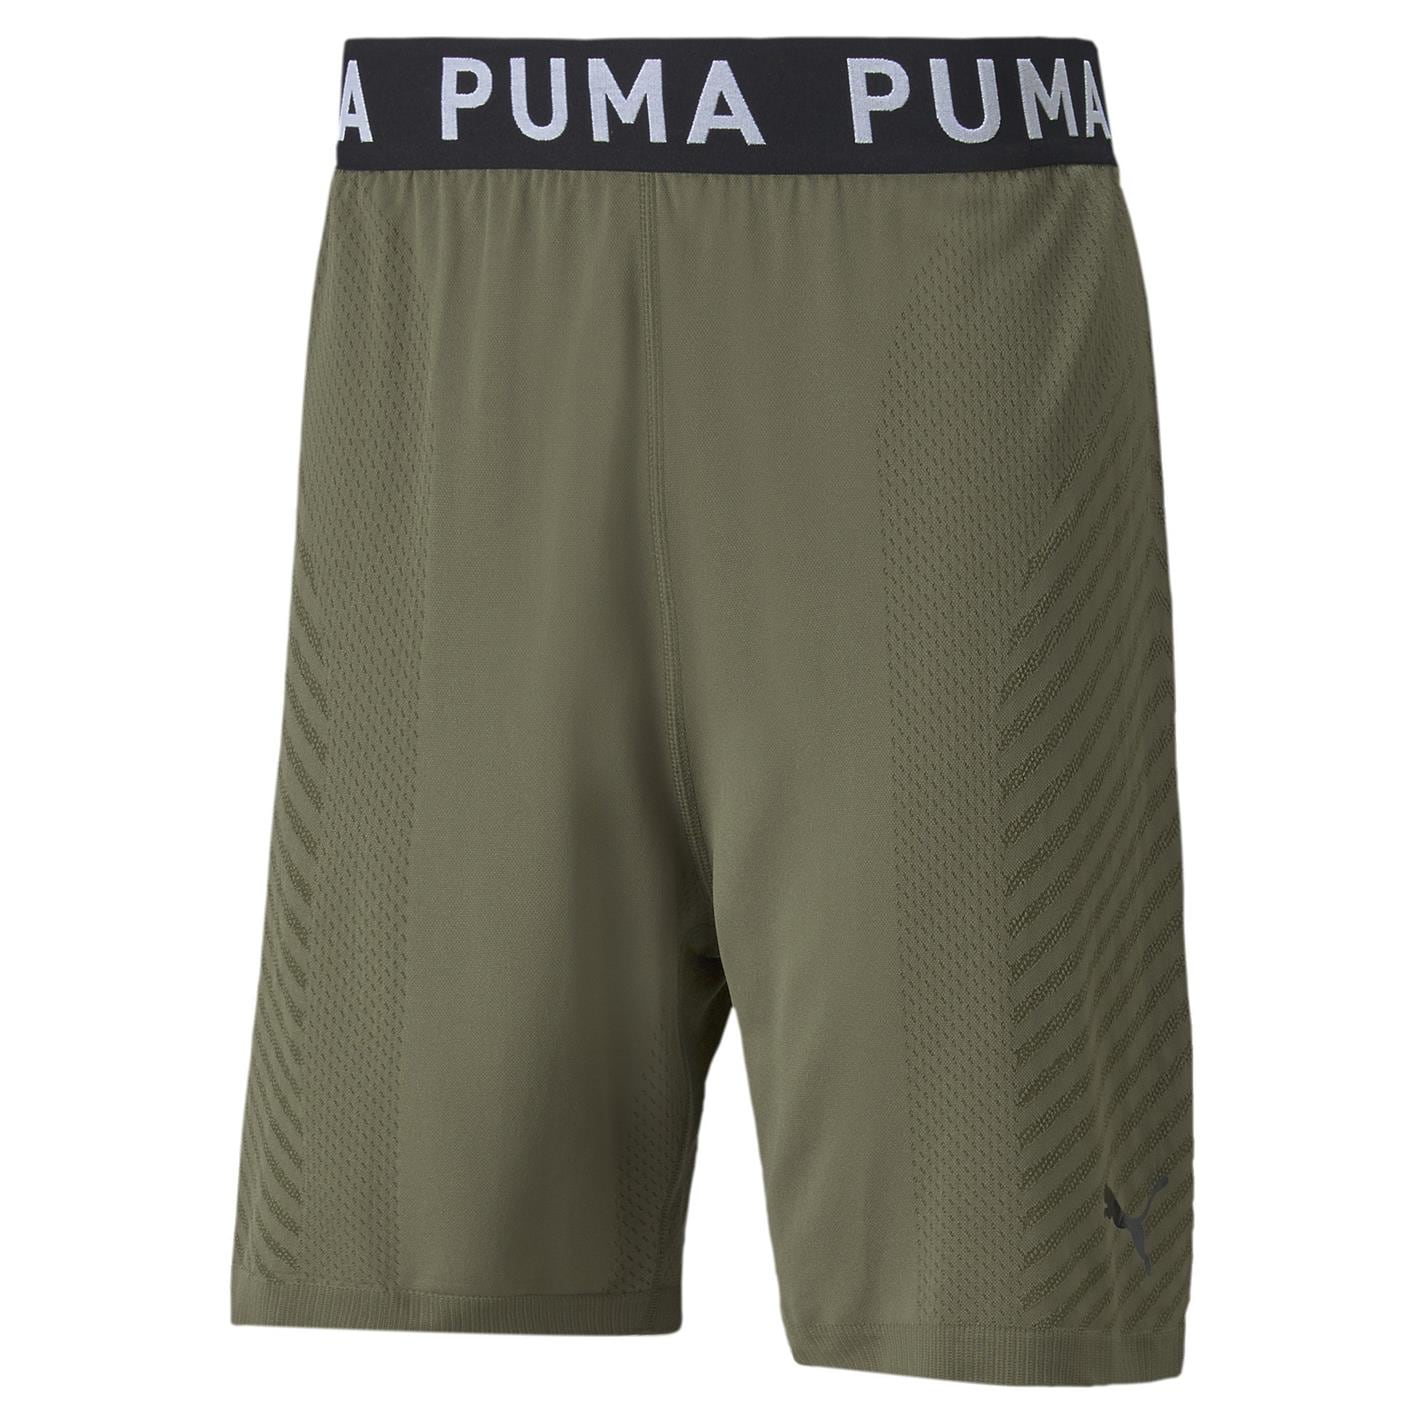 Pantaloni scurti Puma Seamless 7inch pentru Barbati inchis verde